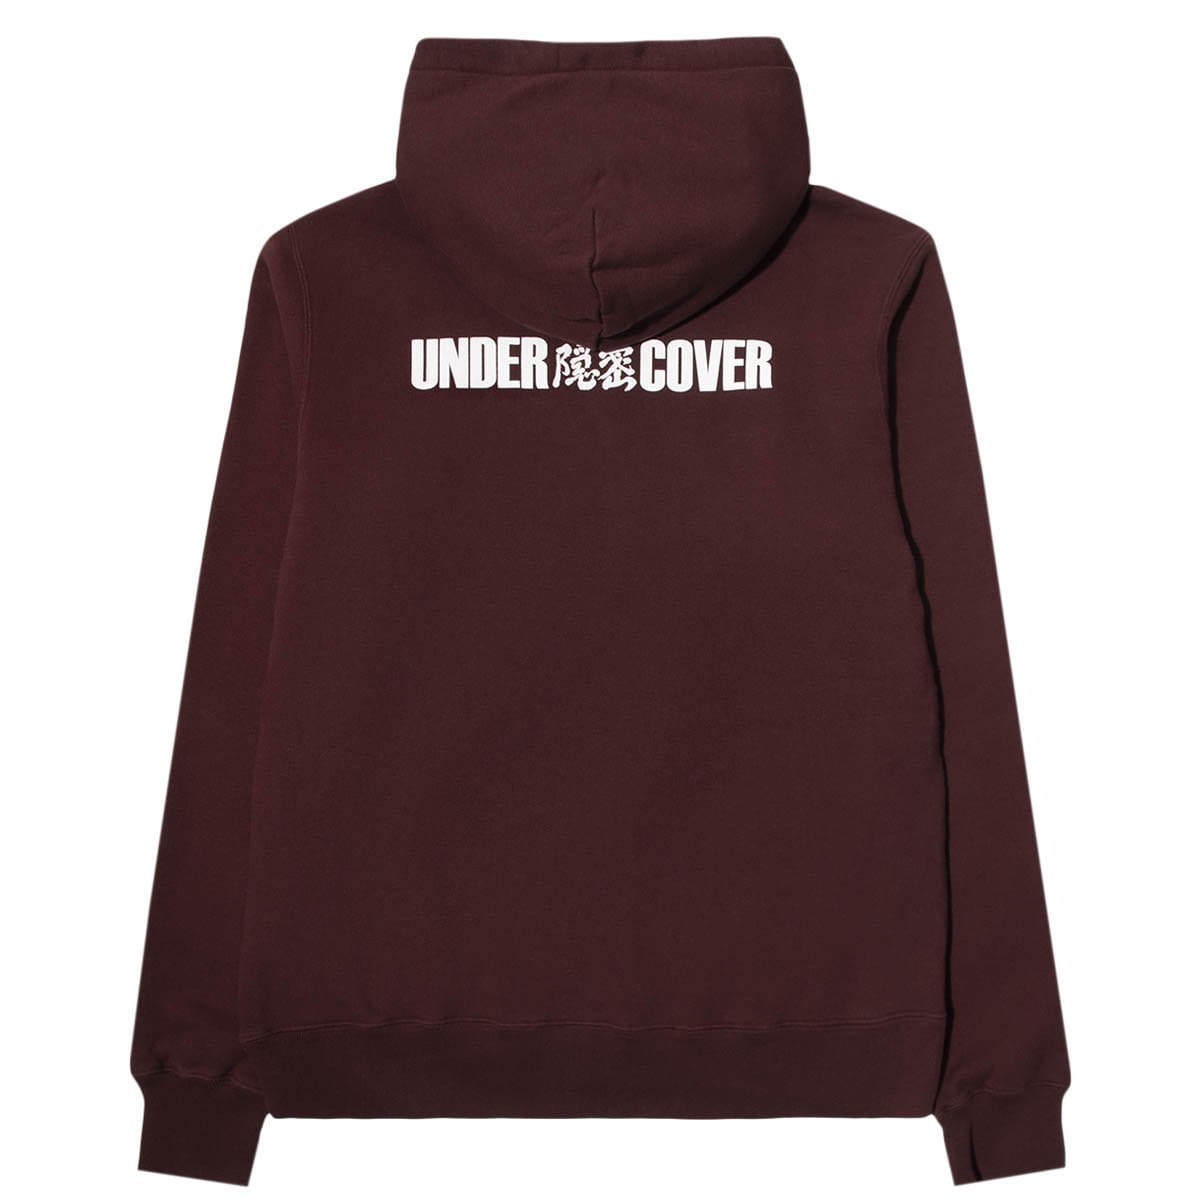 Undercover Hoodies & Sweatshirts UCZ4893-6 SWEATSHIRT